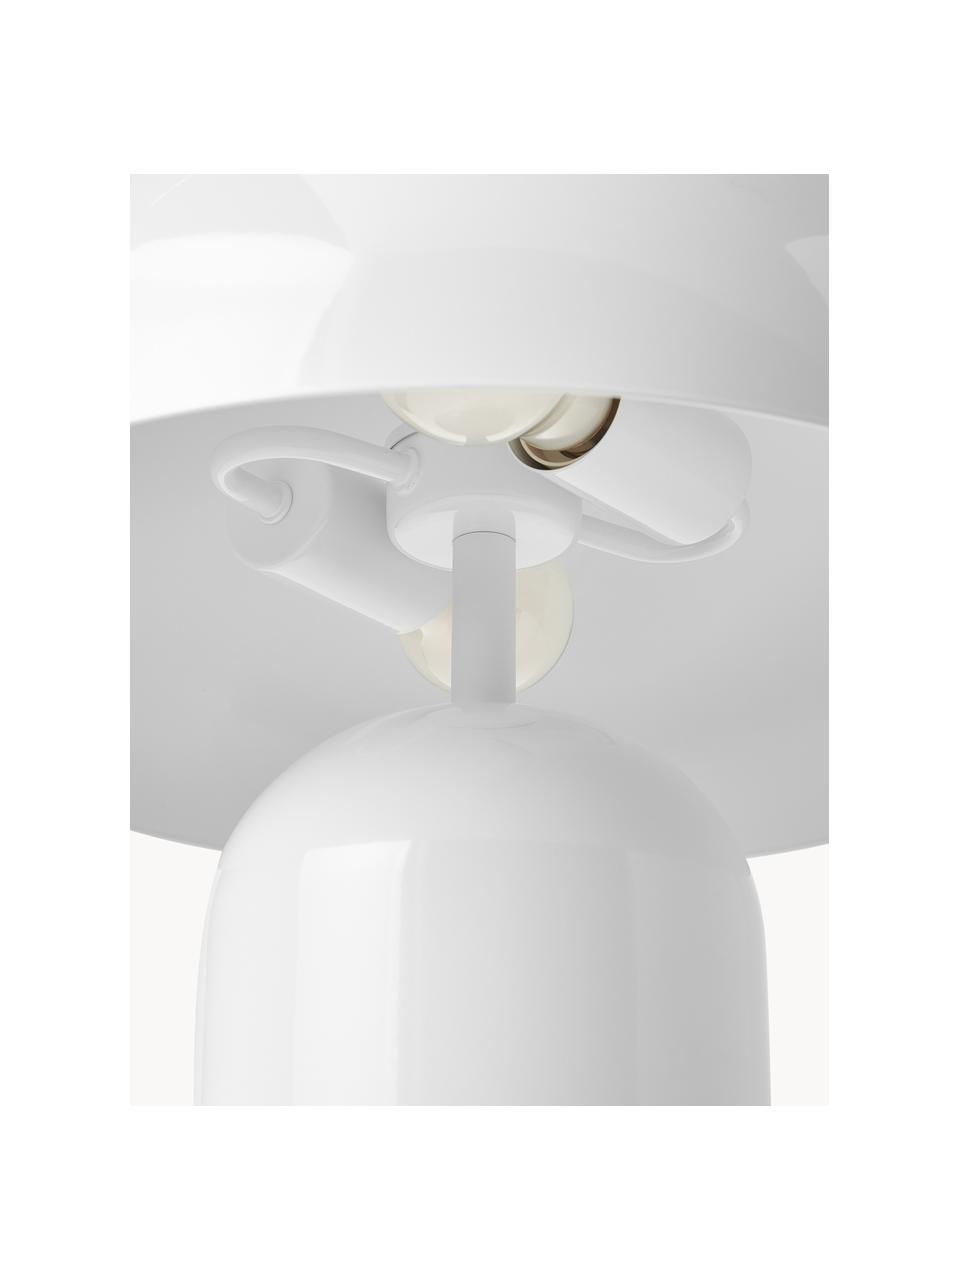 Grosse Retro-Tischlampe Walter, Weiss, glänzend, Ø 38 x H 55 cm